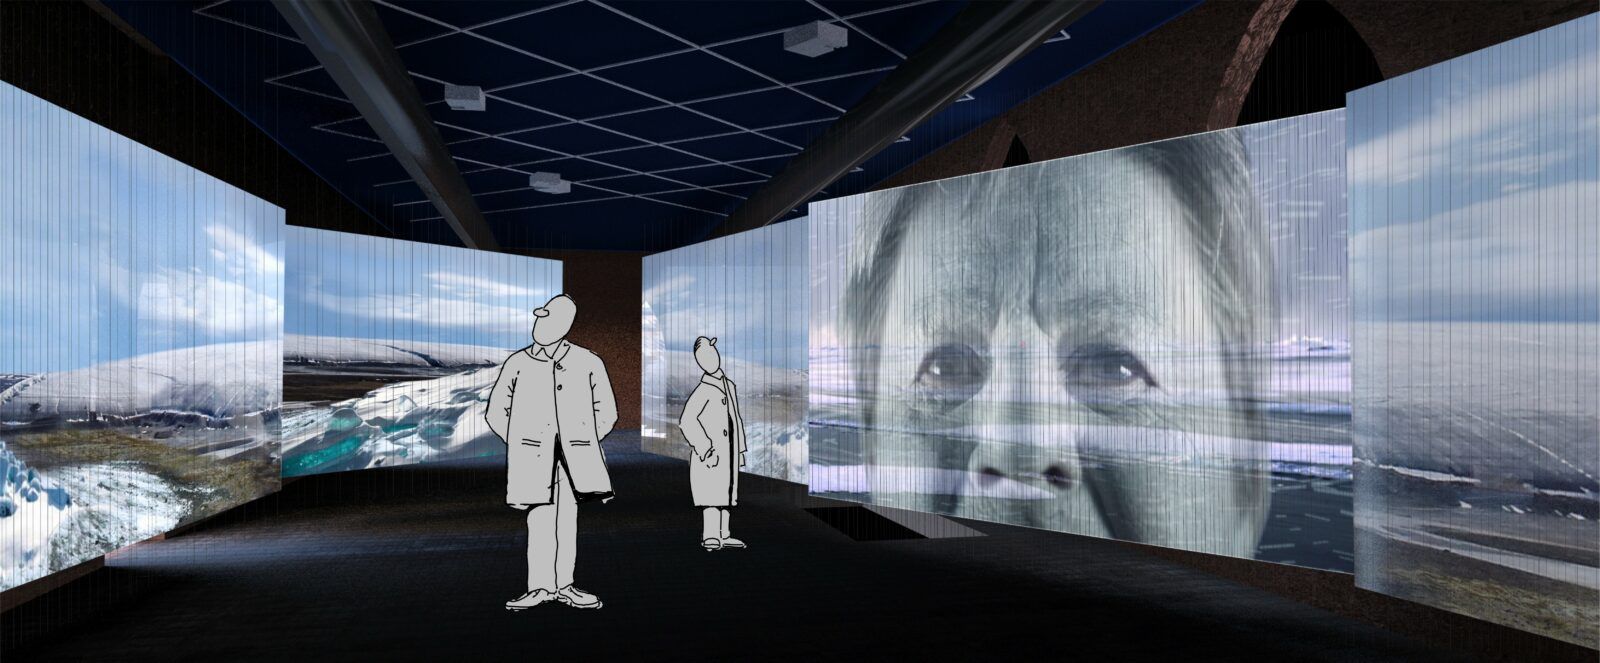 Zwei animierte Figuren stehen in einem Raum, in dem verschiedenen Leinwände angeordnet sind.